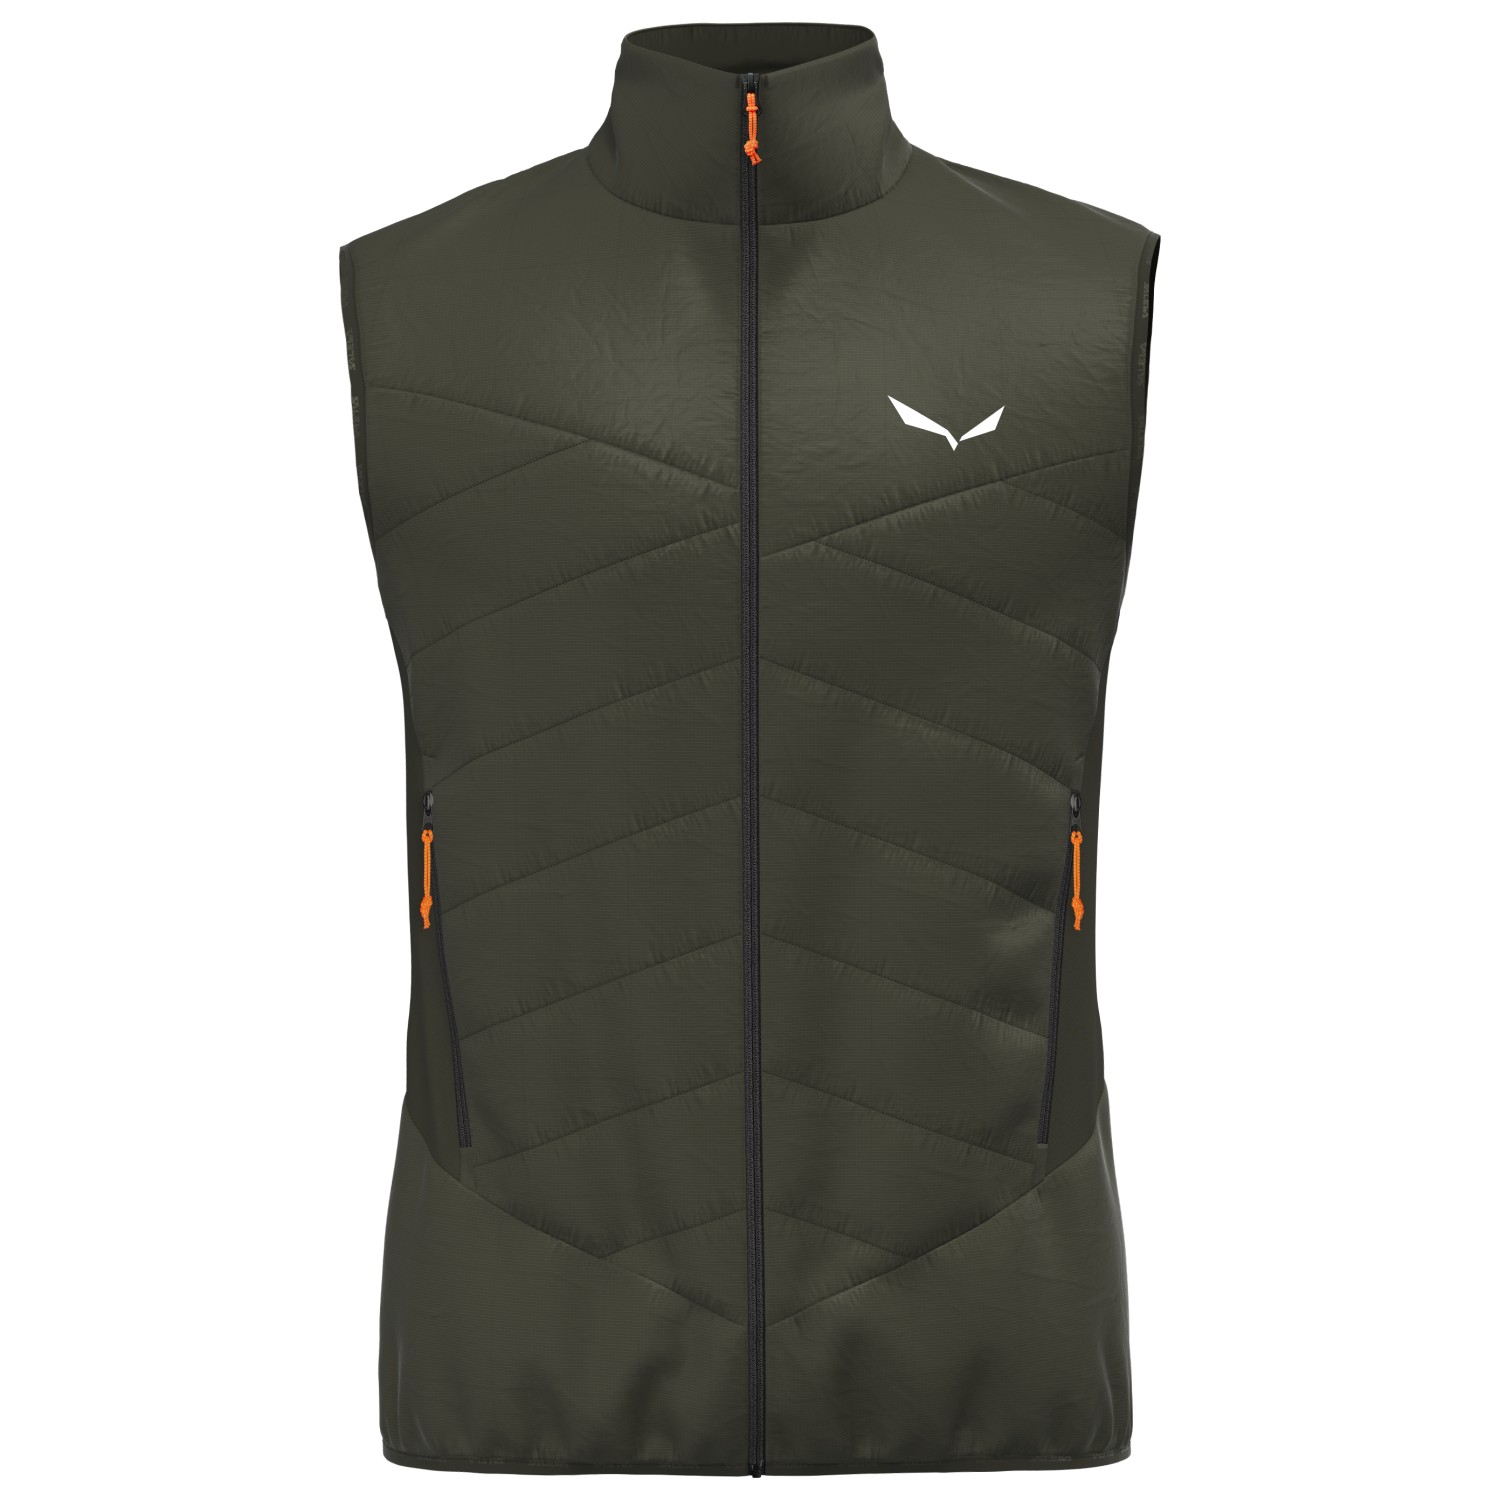 шерстяной жилет salewa ortles hybrid twr vest цвет black out Шерстяной жилет Salewa Ortles Hybrid TWR Vest, цвет Dark Olive